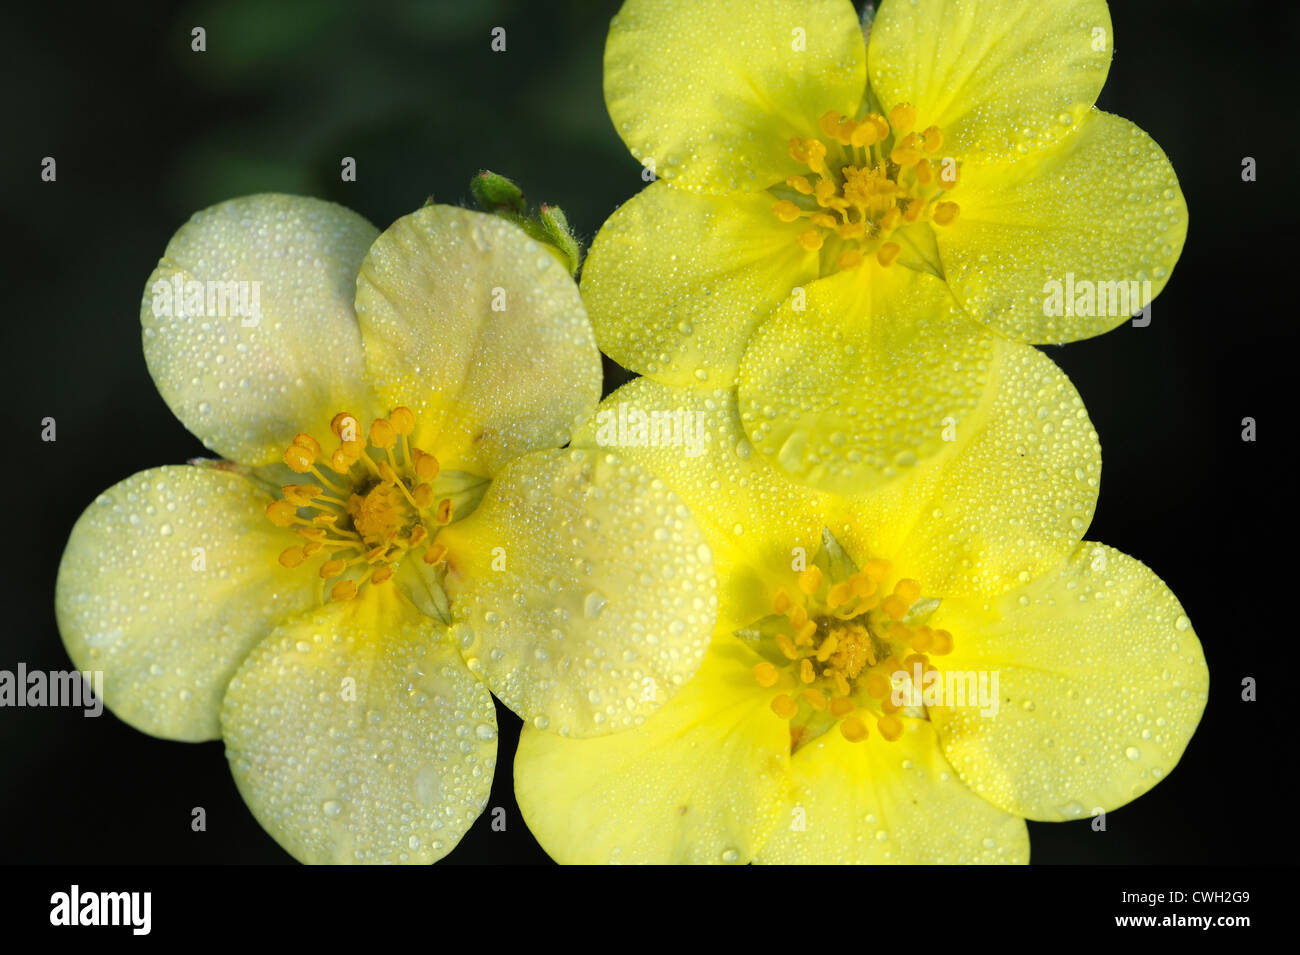 Flowers of Shrubby Cinquefoil (Potentilla fruticosa) Stock Photo